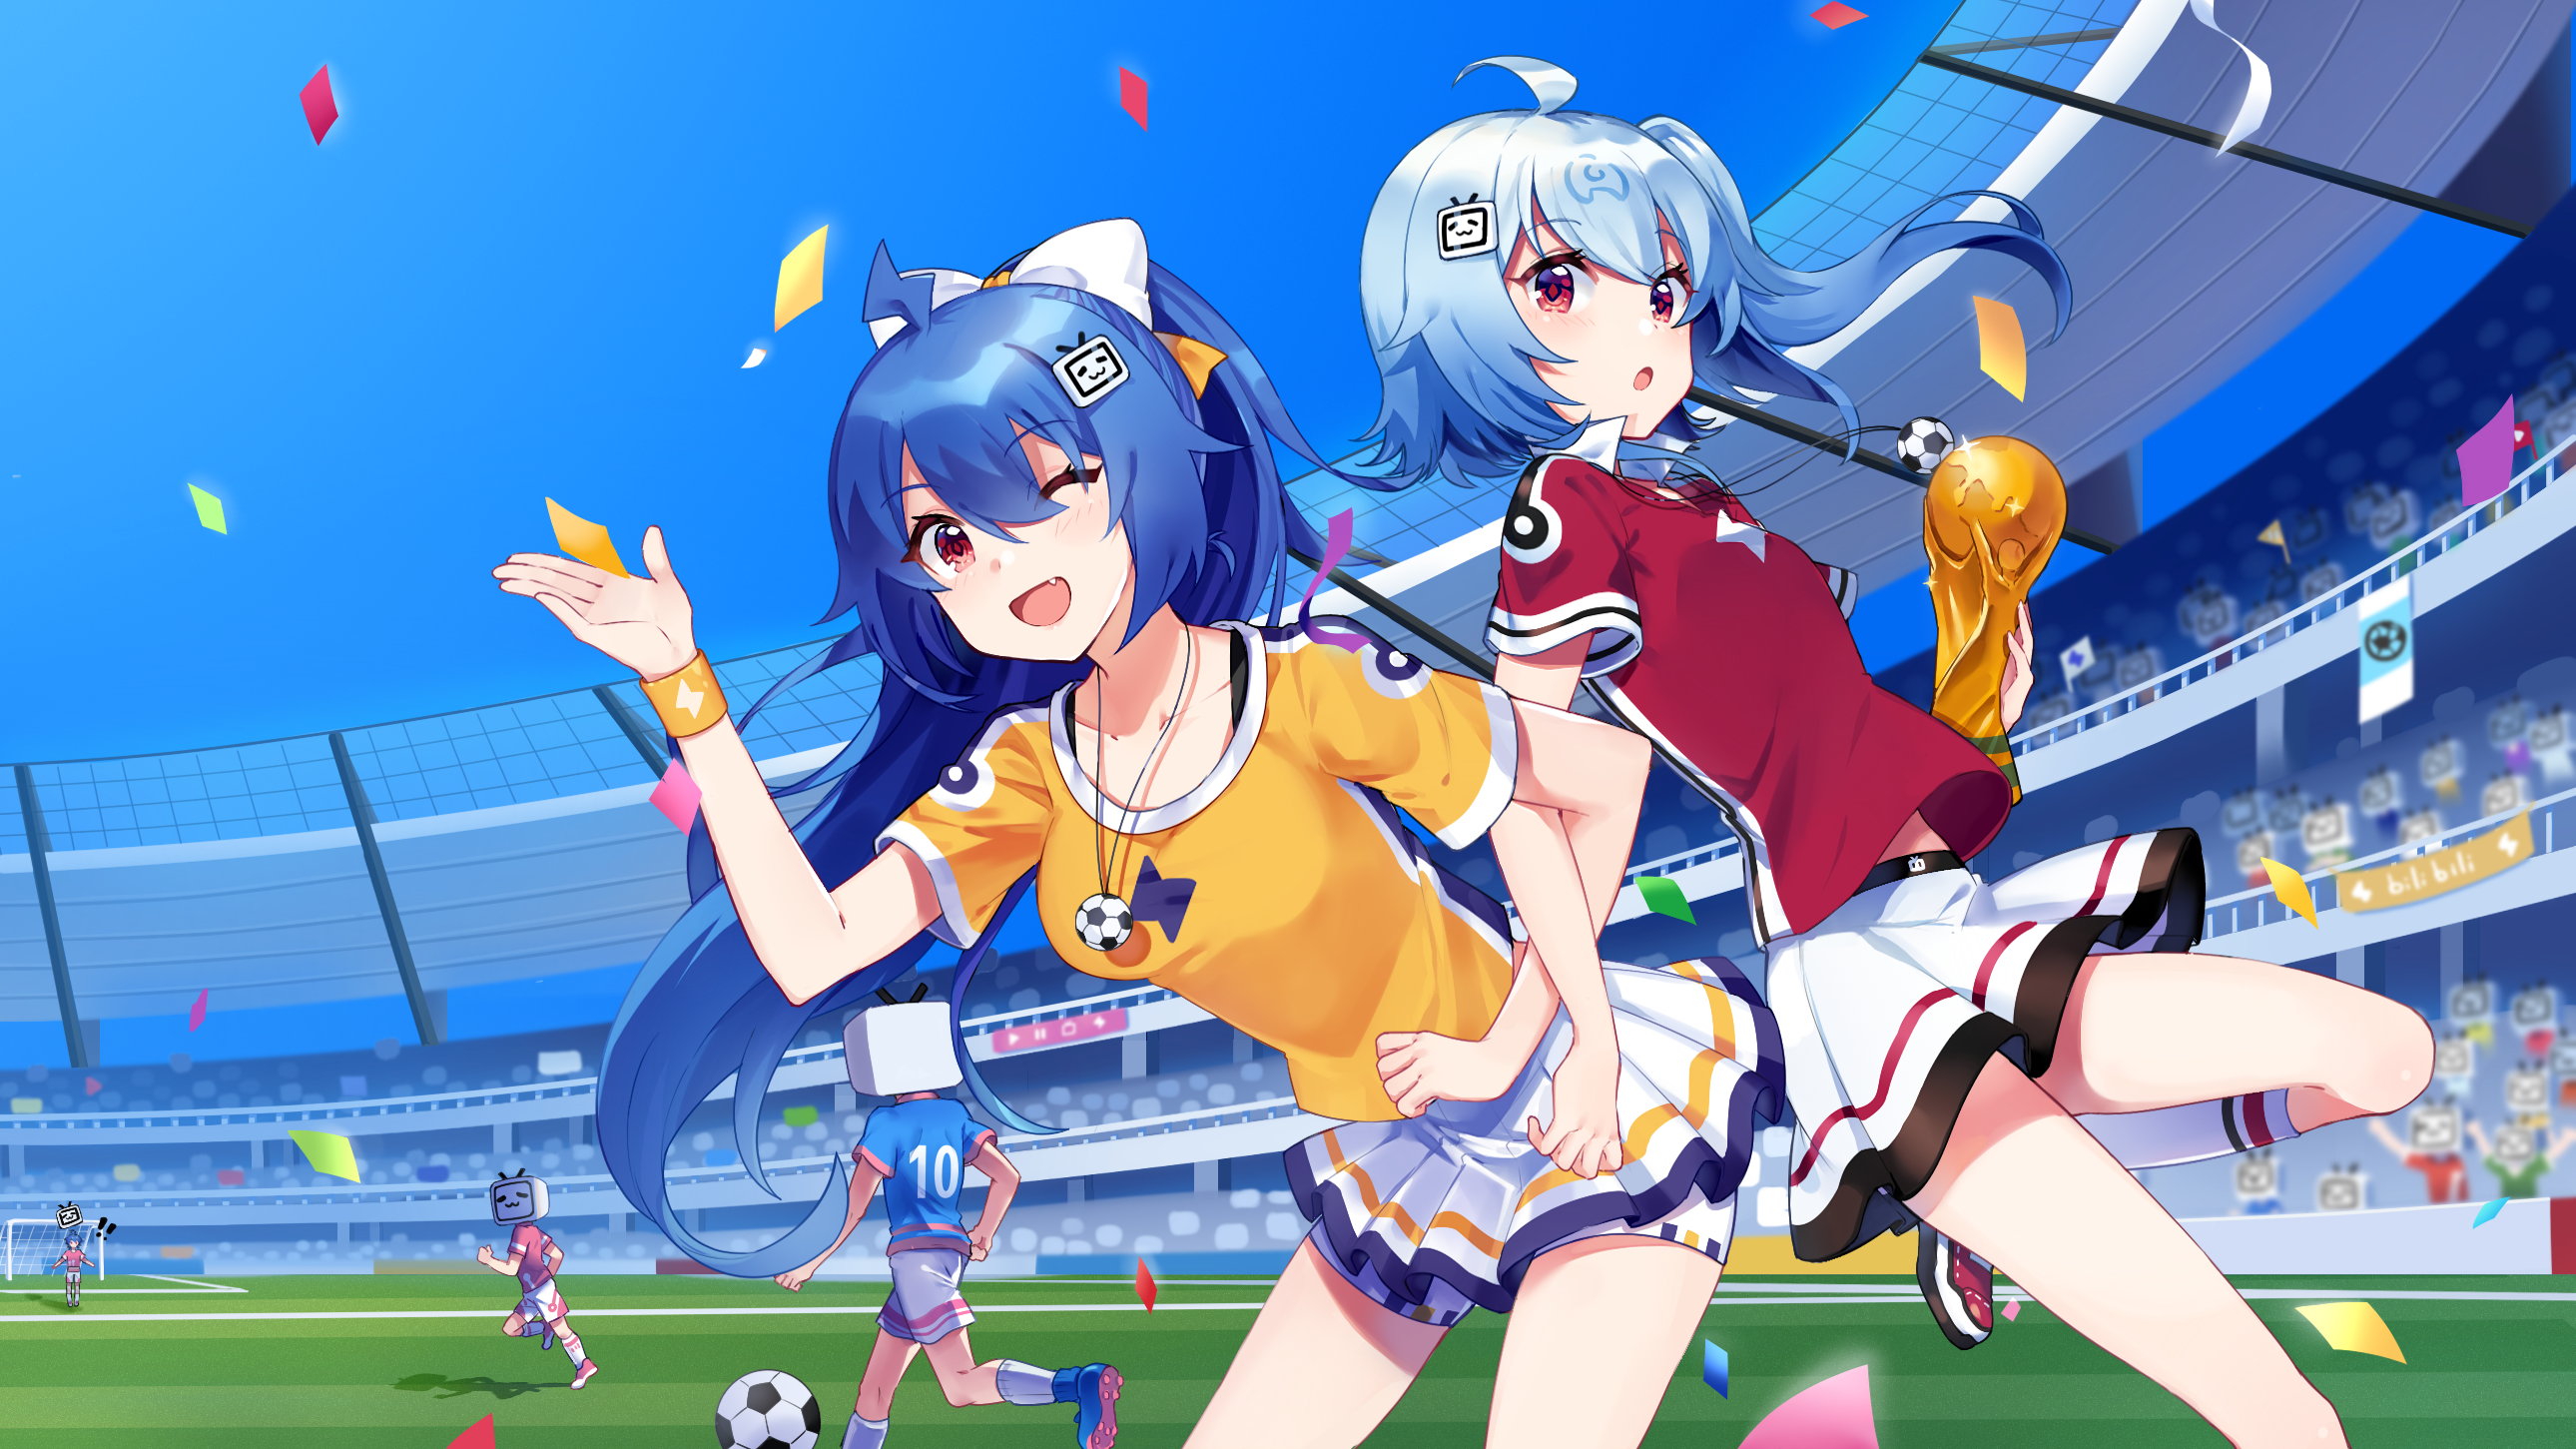 22 Bilibili 33 Bilibili Bilibili Digital Art Anime Girls Confetti Soccer Ball 2580x1451